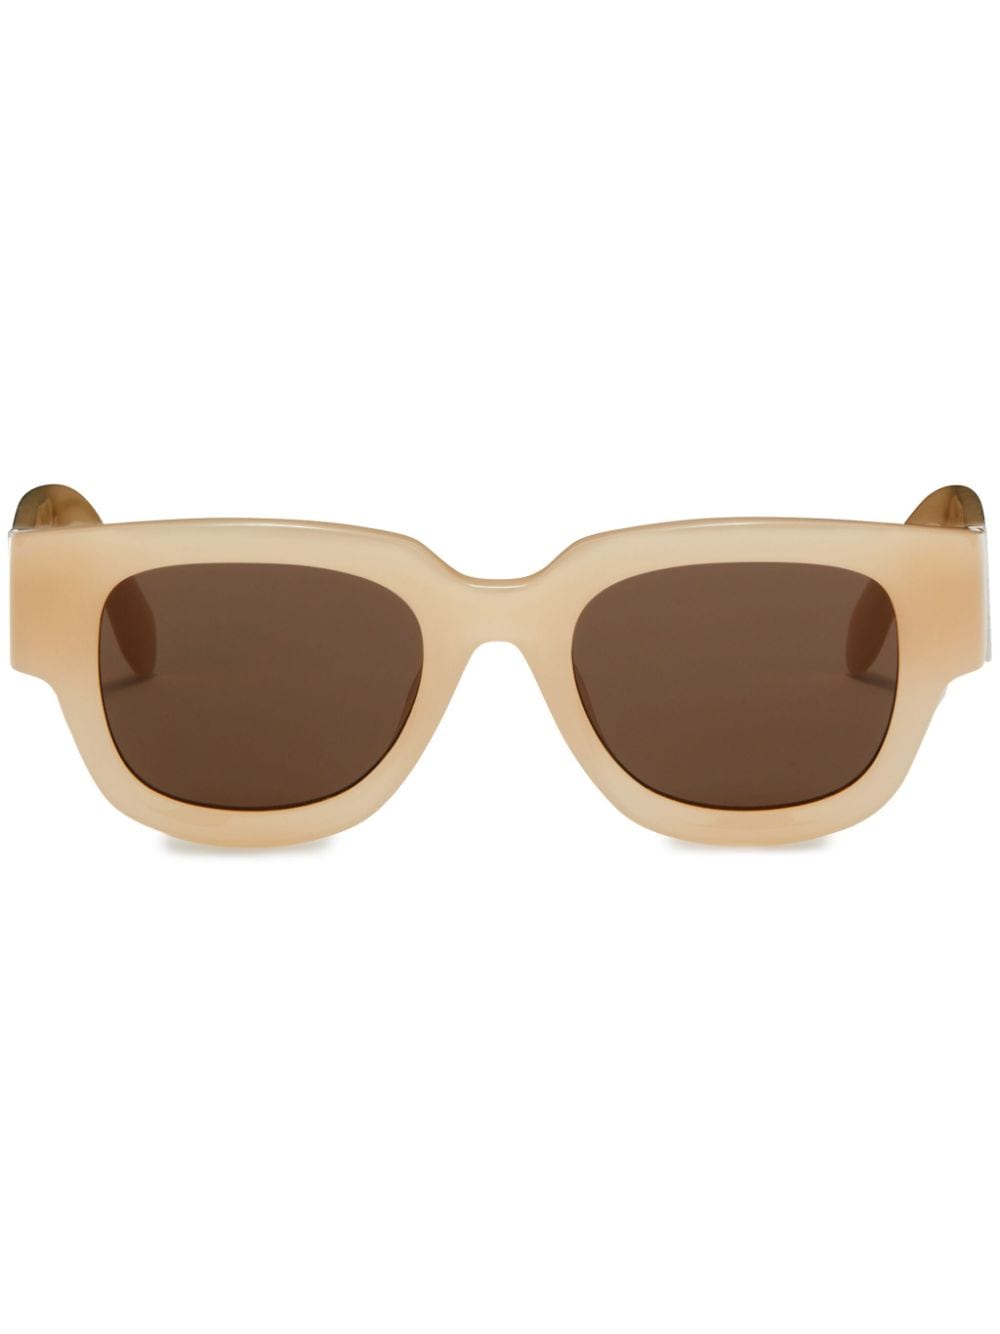 Palm Angels Monterey square-frame sunglasses - Neutrals von Palm Angels